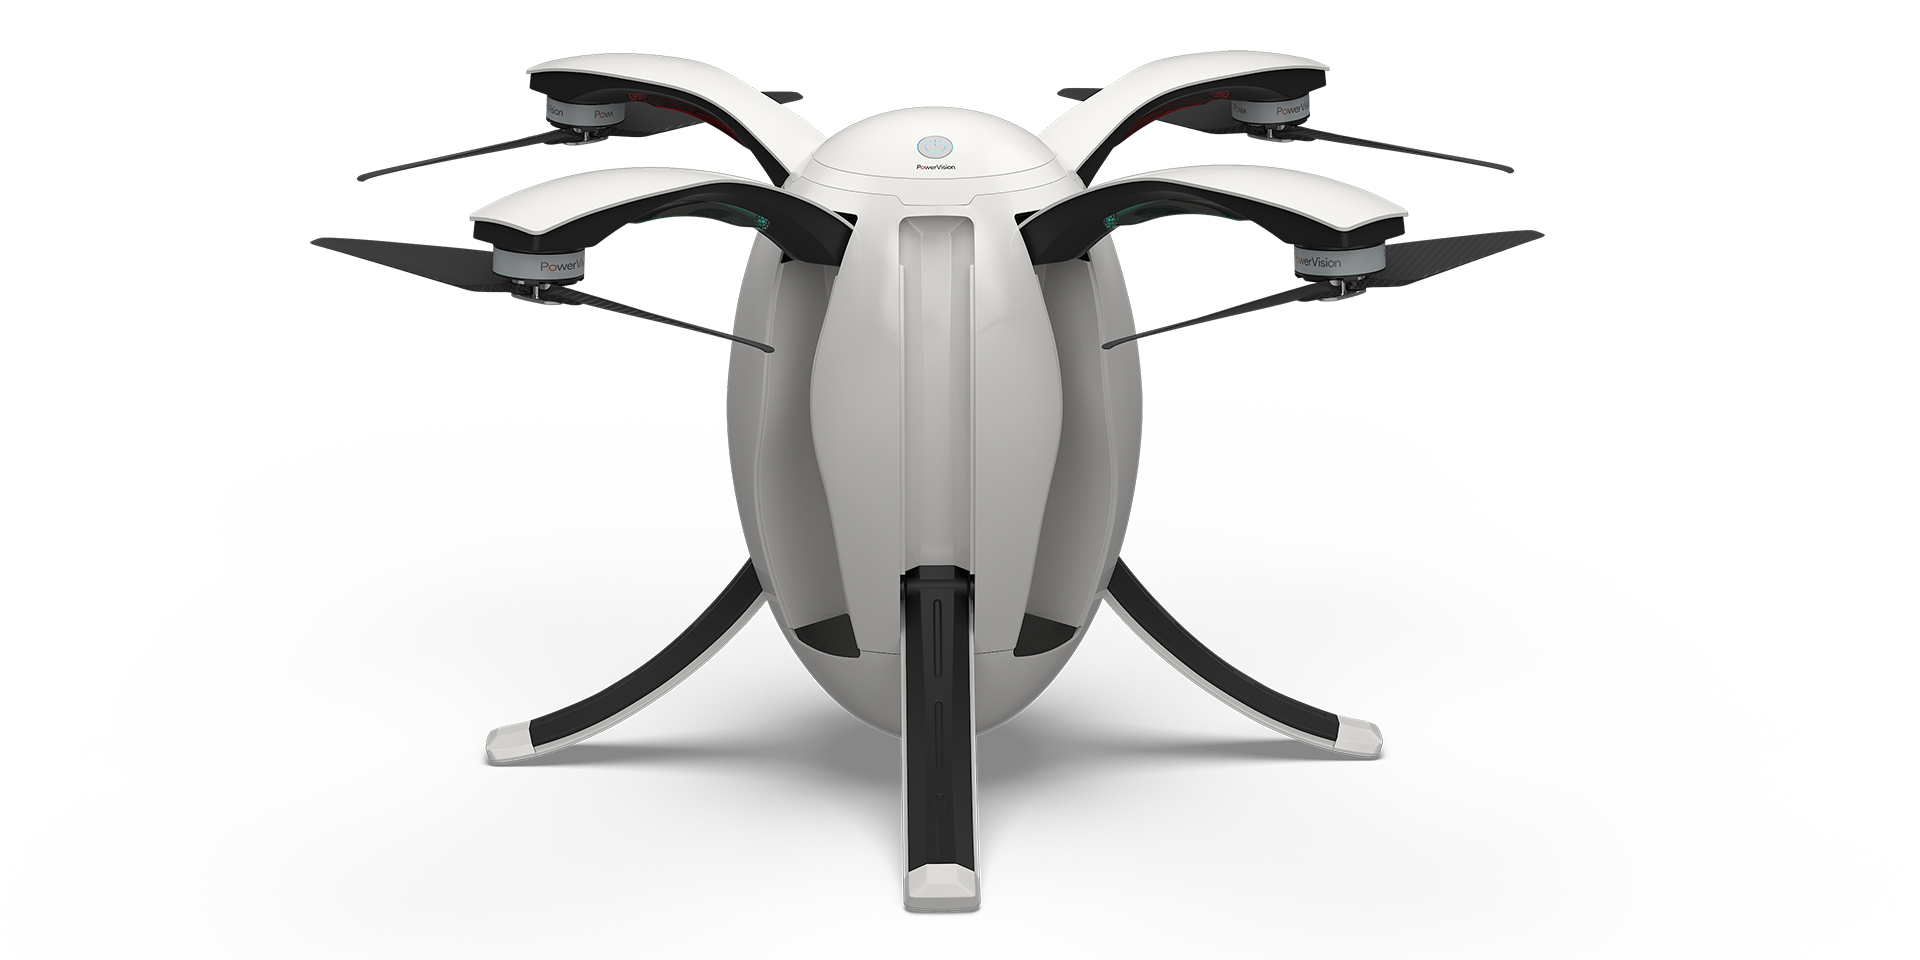 PowerEgg Drone has a unique design w/ 4K camera & special sensors